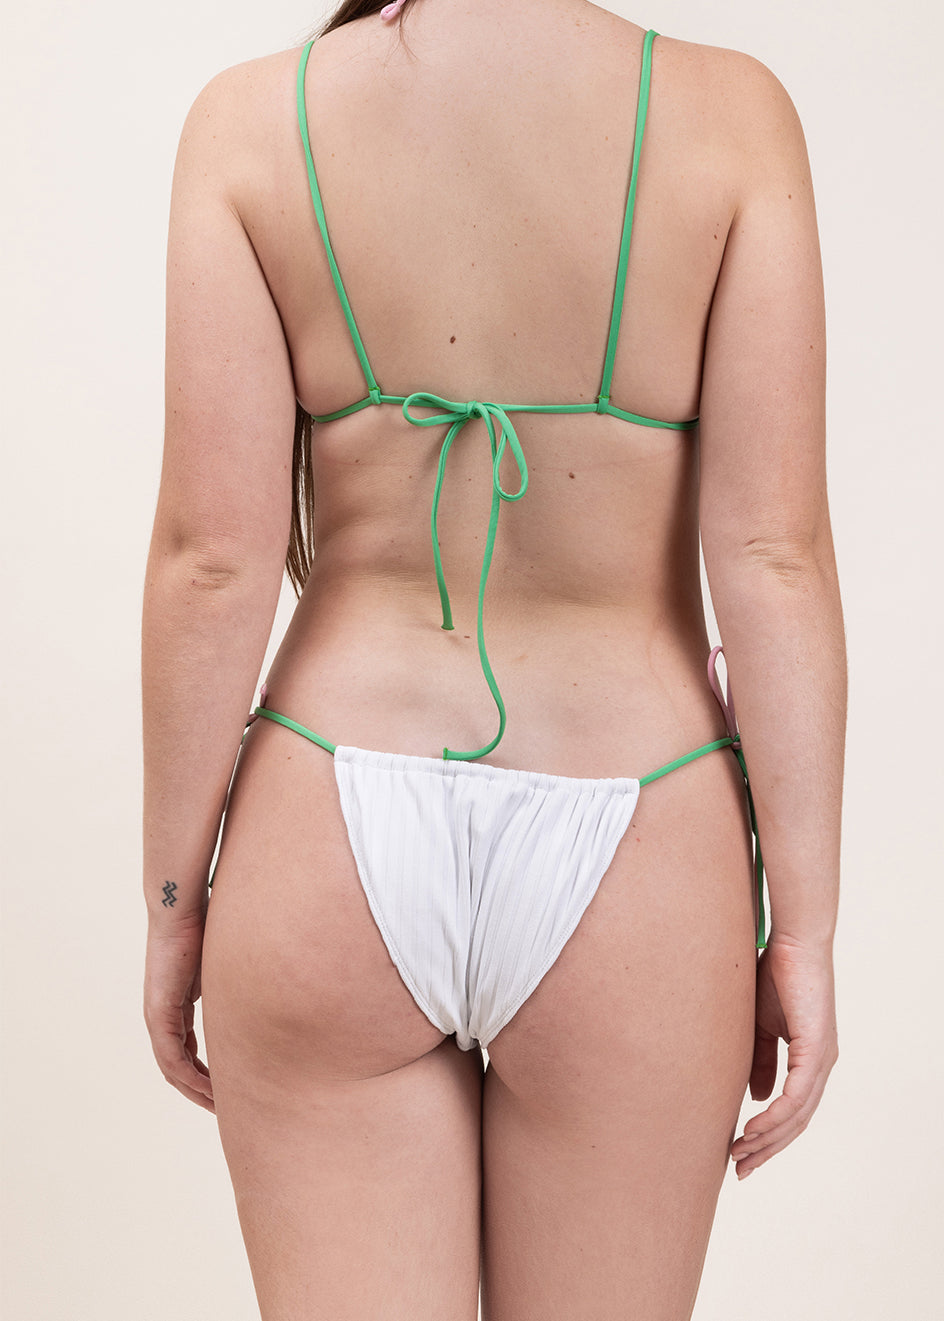 Photo de dos d'une femme portant le maillot Alaior blanc avec les bretelles vertes